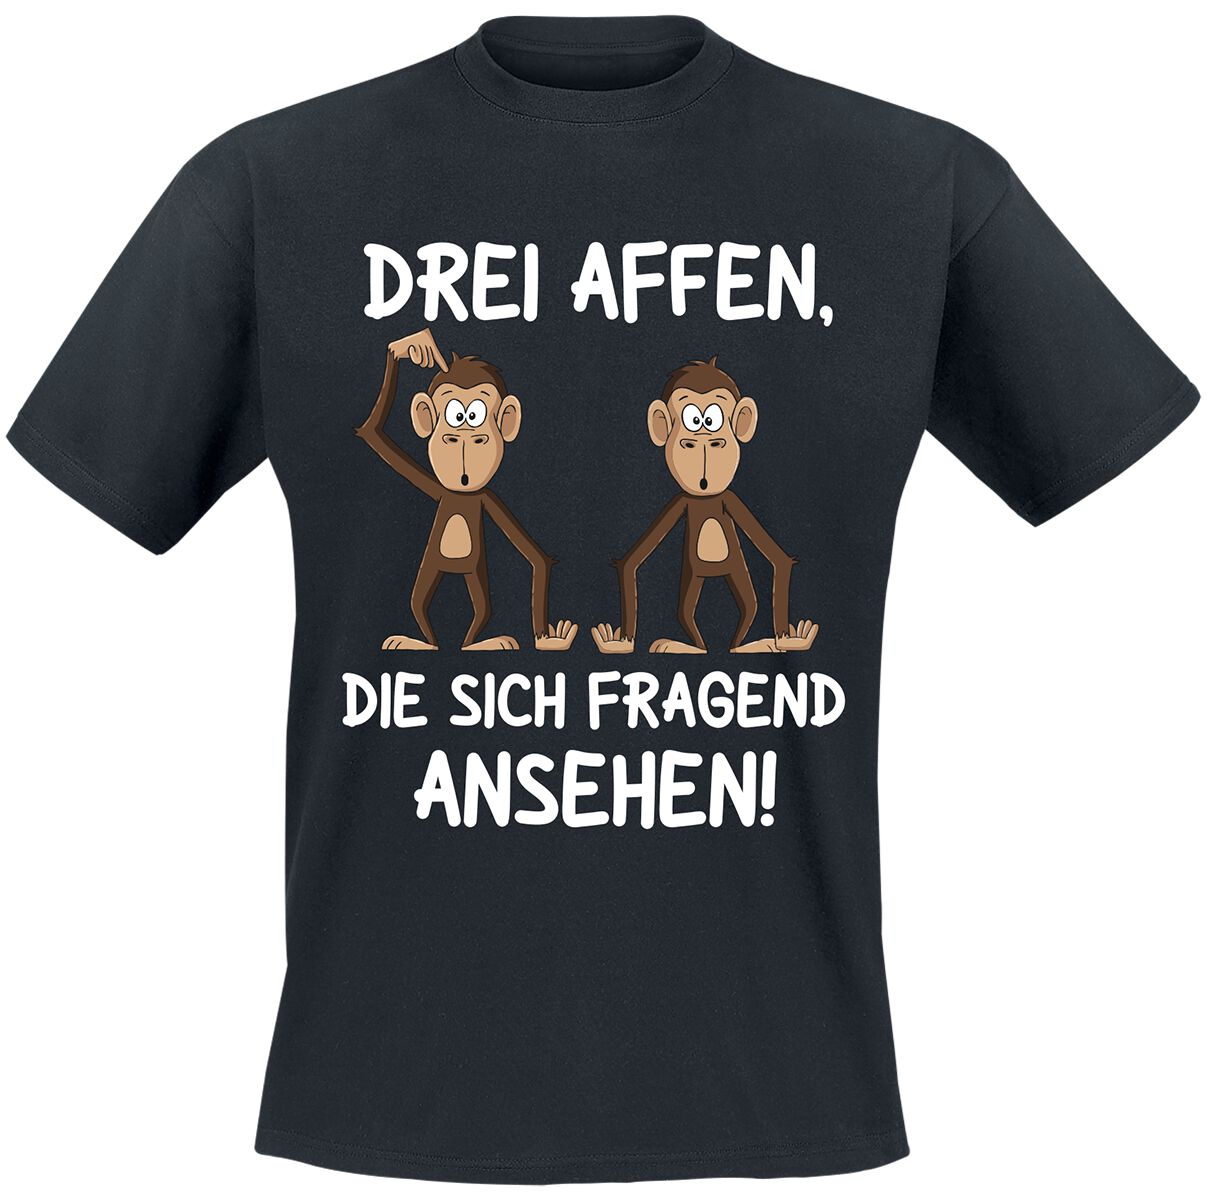 Tierisch T-Shirt - Drei Affen, die sich fragend ansehen! - M bis 4XL - für Männer - Größe 4XL - schwarz